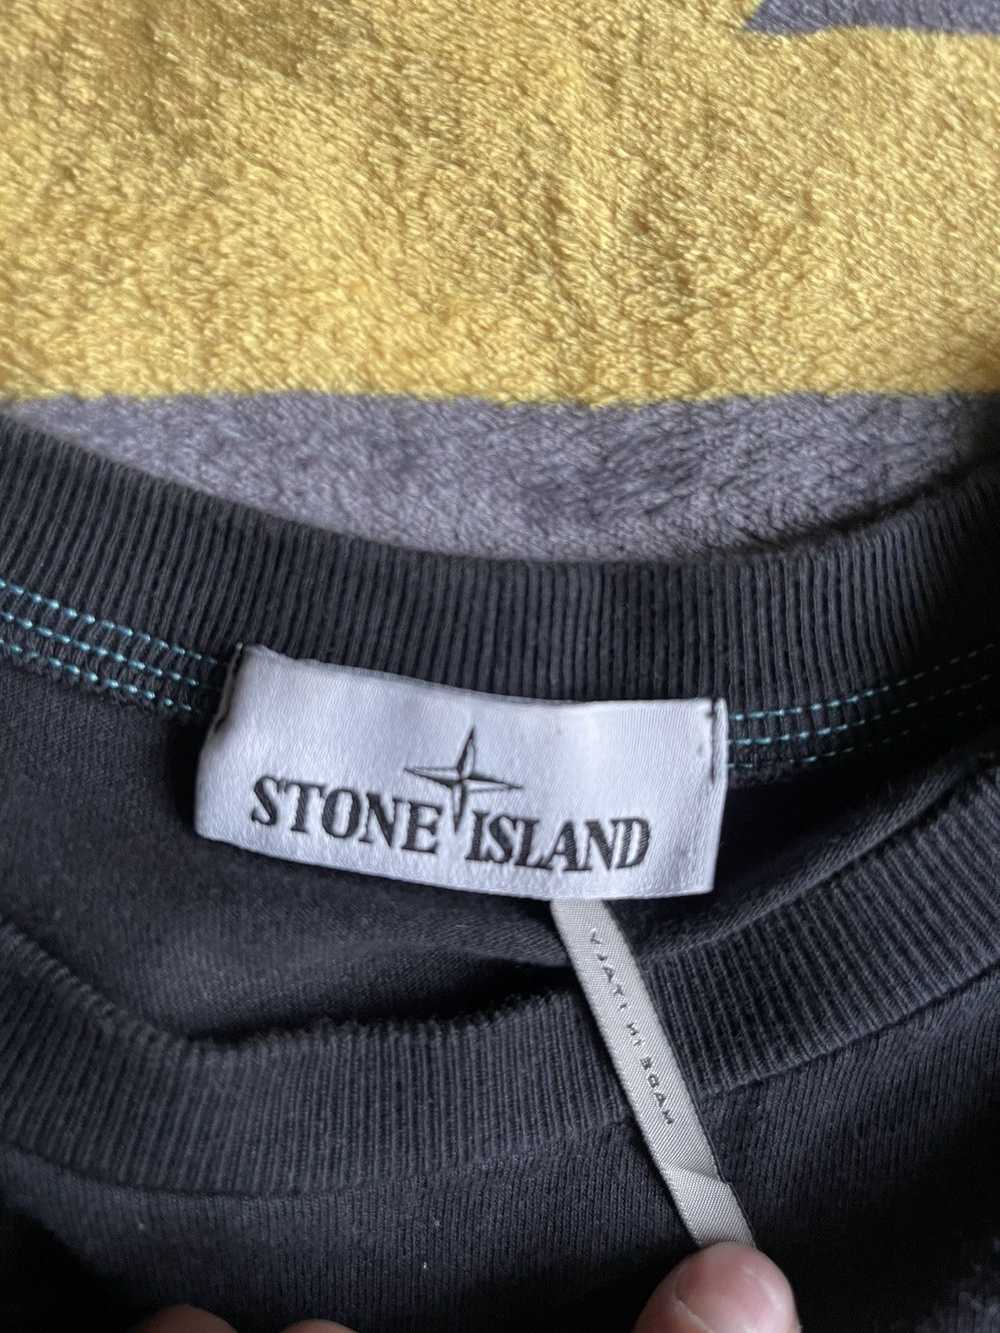 Stone Island Stone Island Long Sleeve - image 3